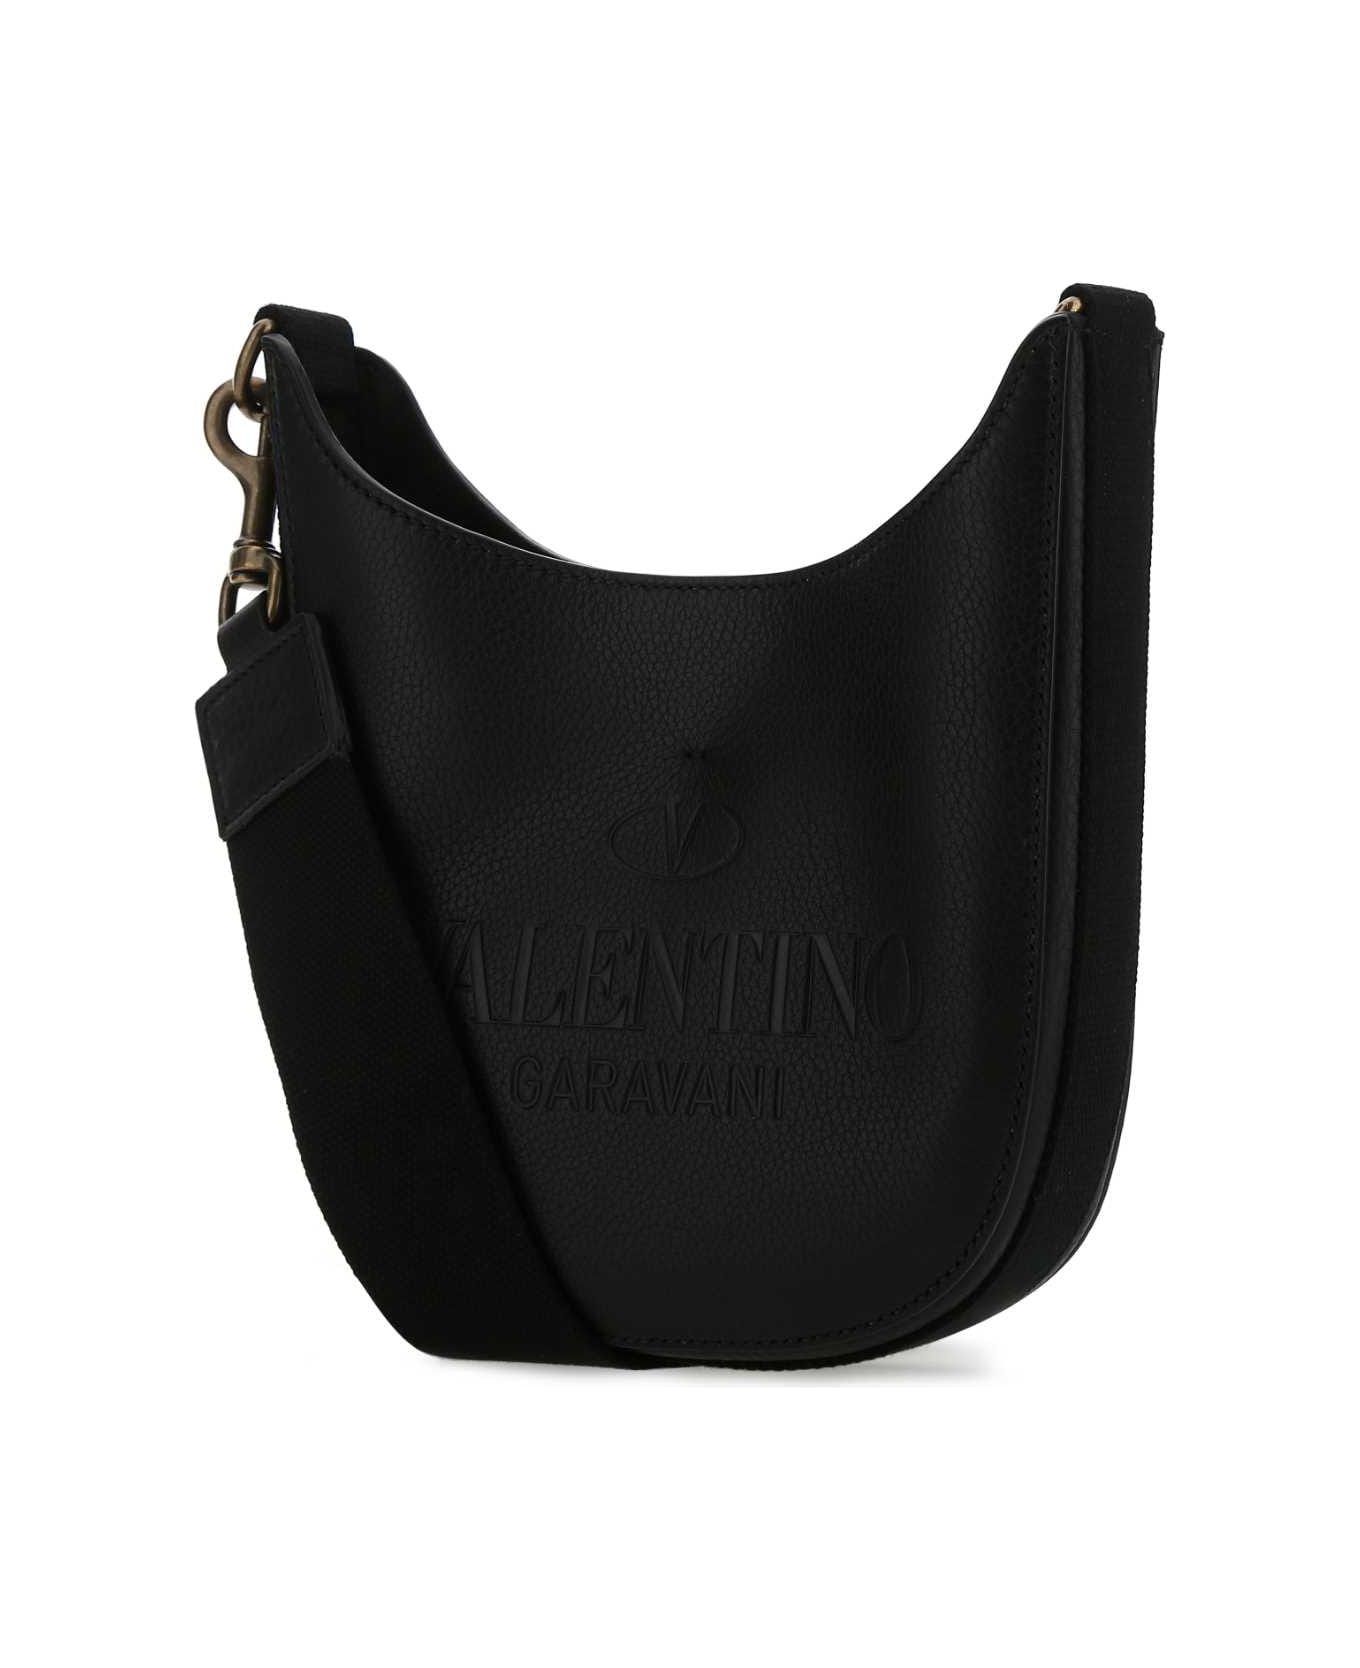 Valentino Garavani Black Leather Identity Crossbody Bag - 0NO